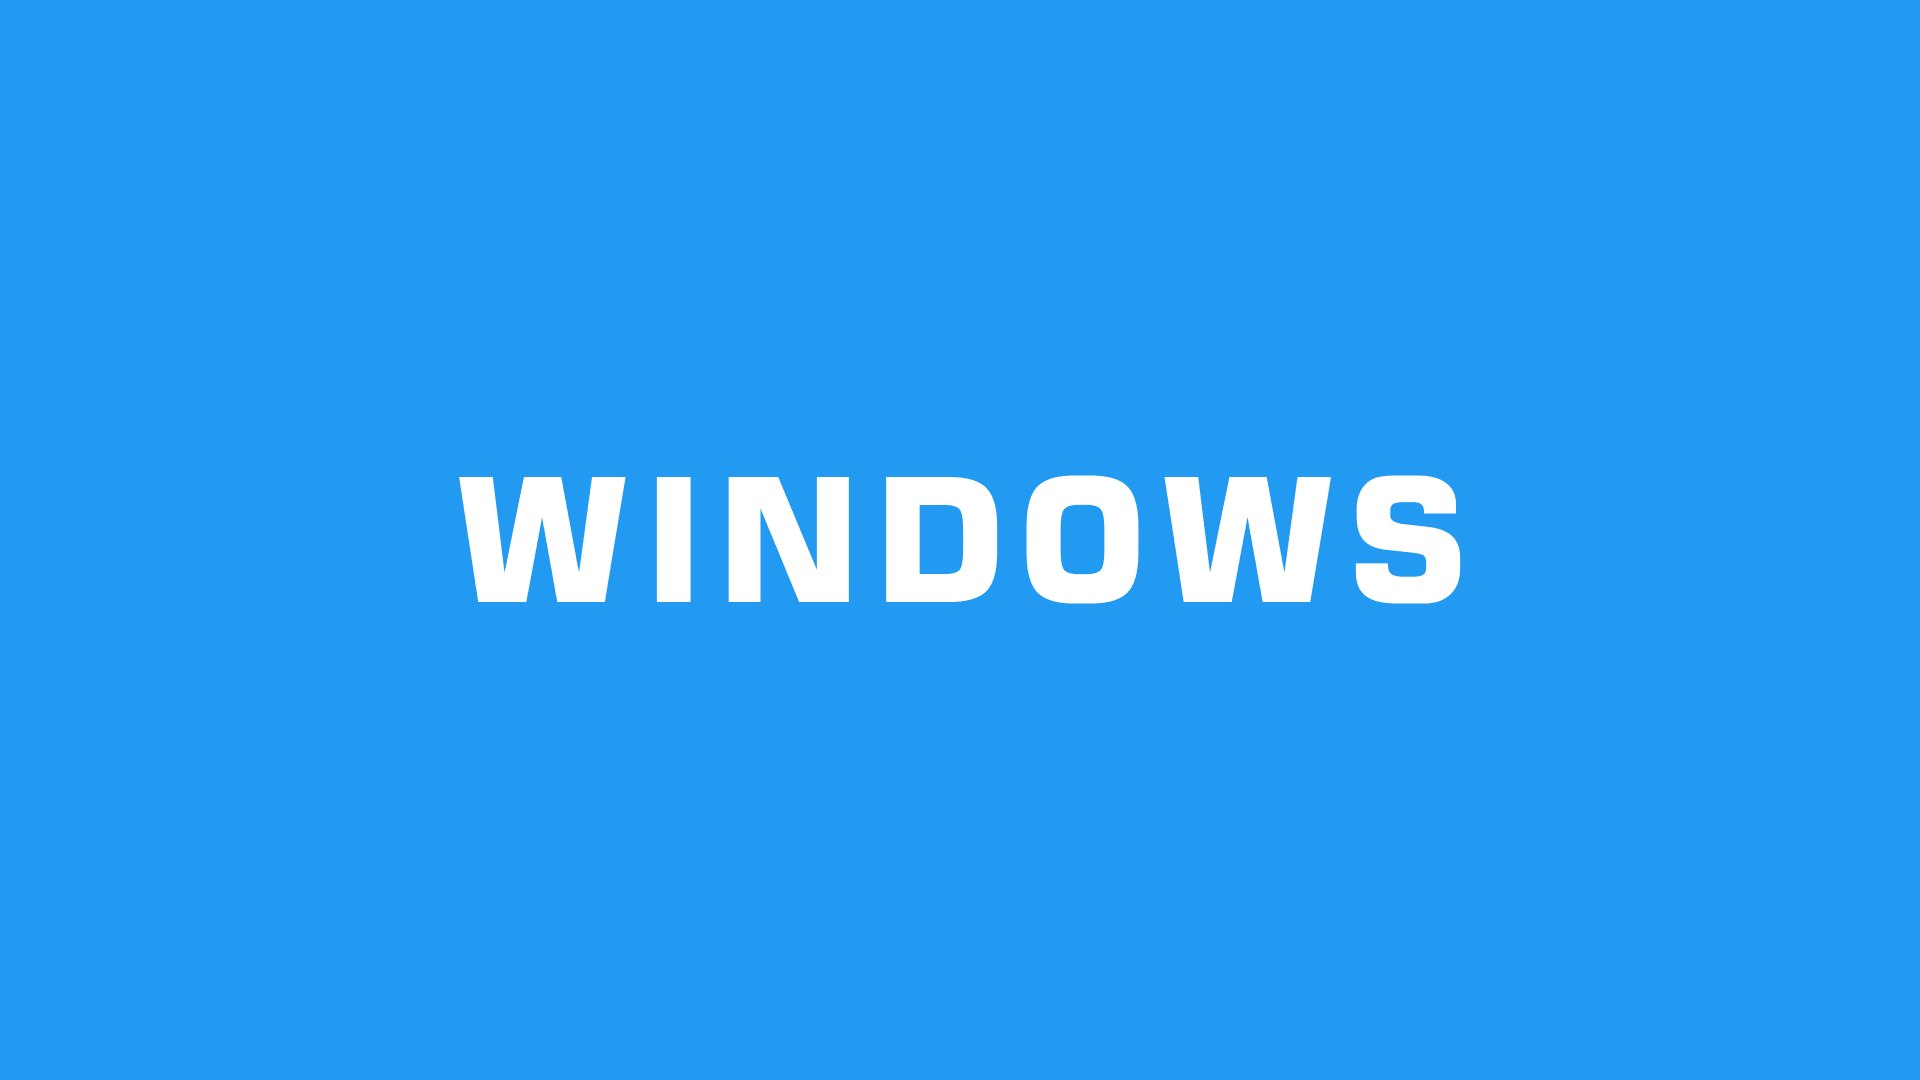 Windows 10 更新後，螢幕變黑、亂碼、解析度變差，原來是顯示卡惹的禍